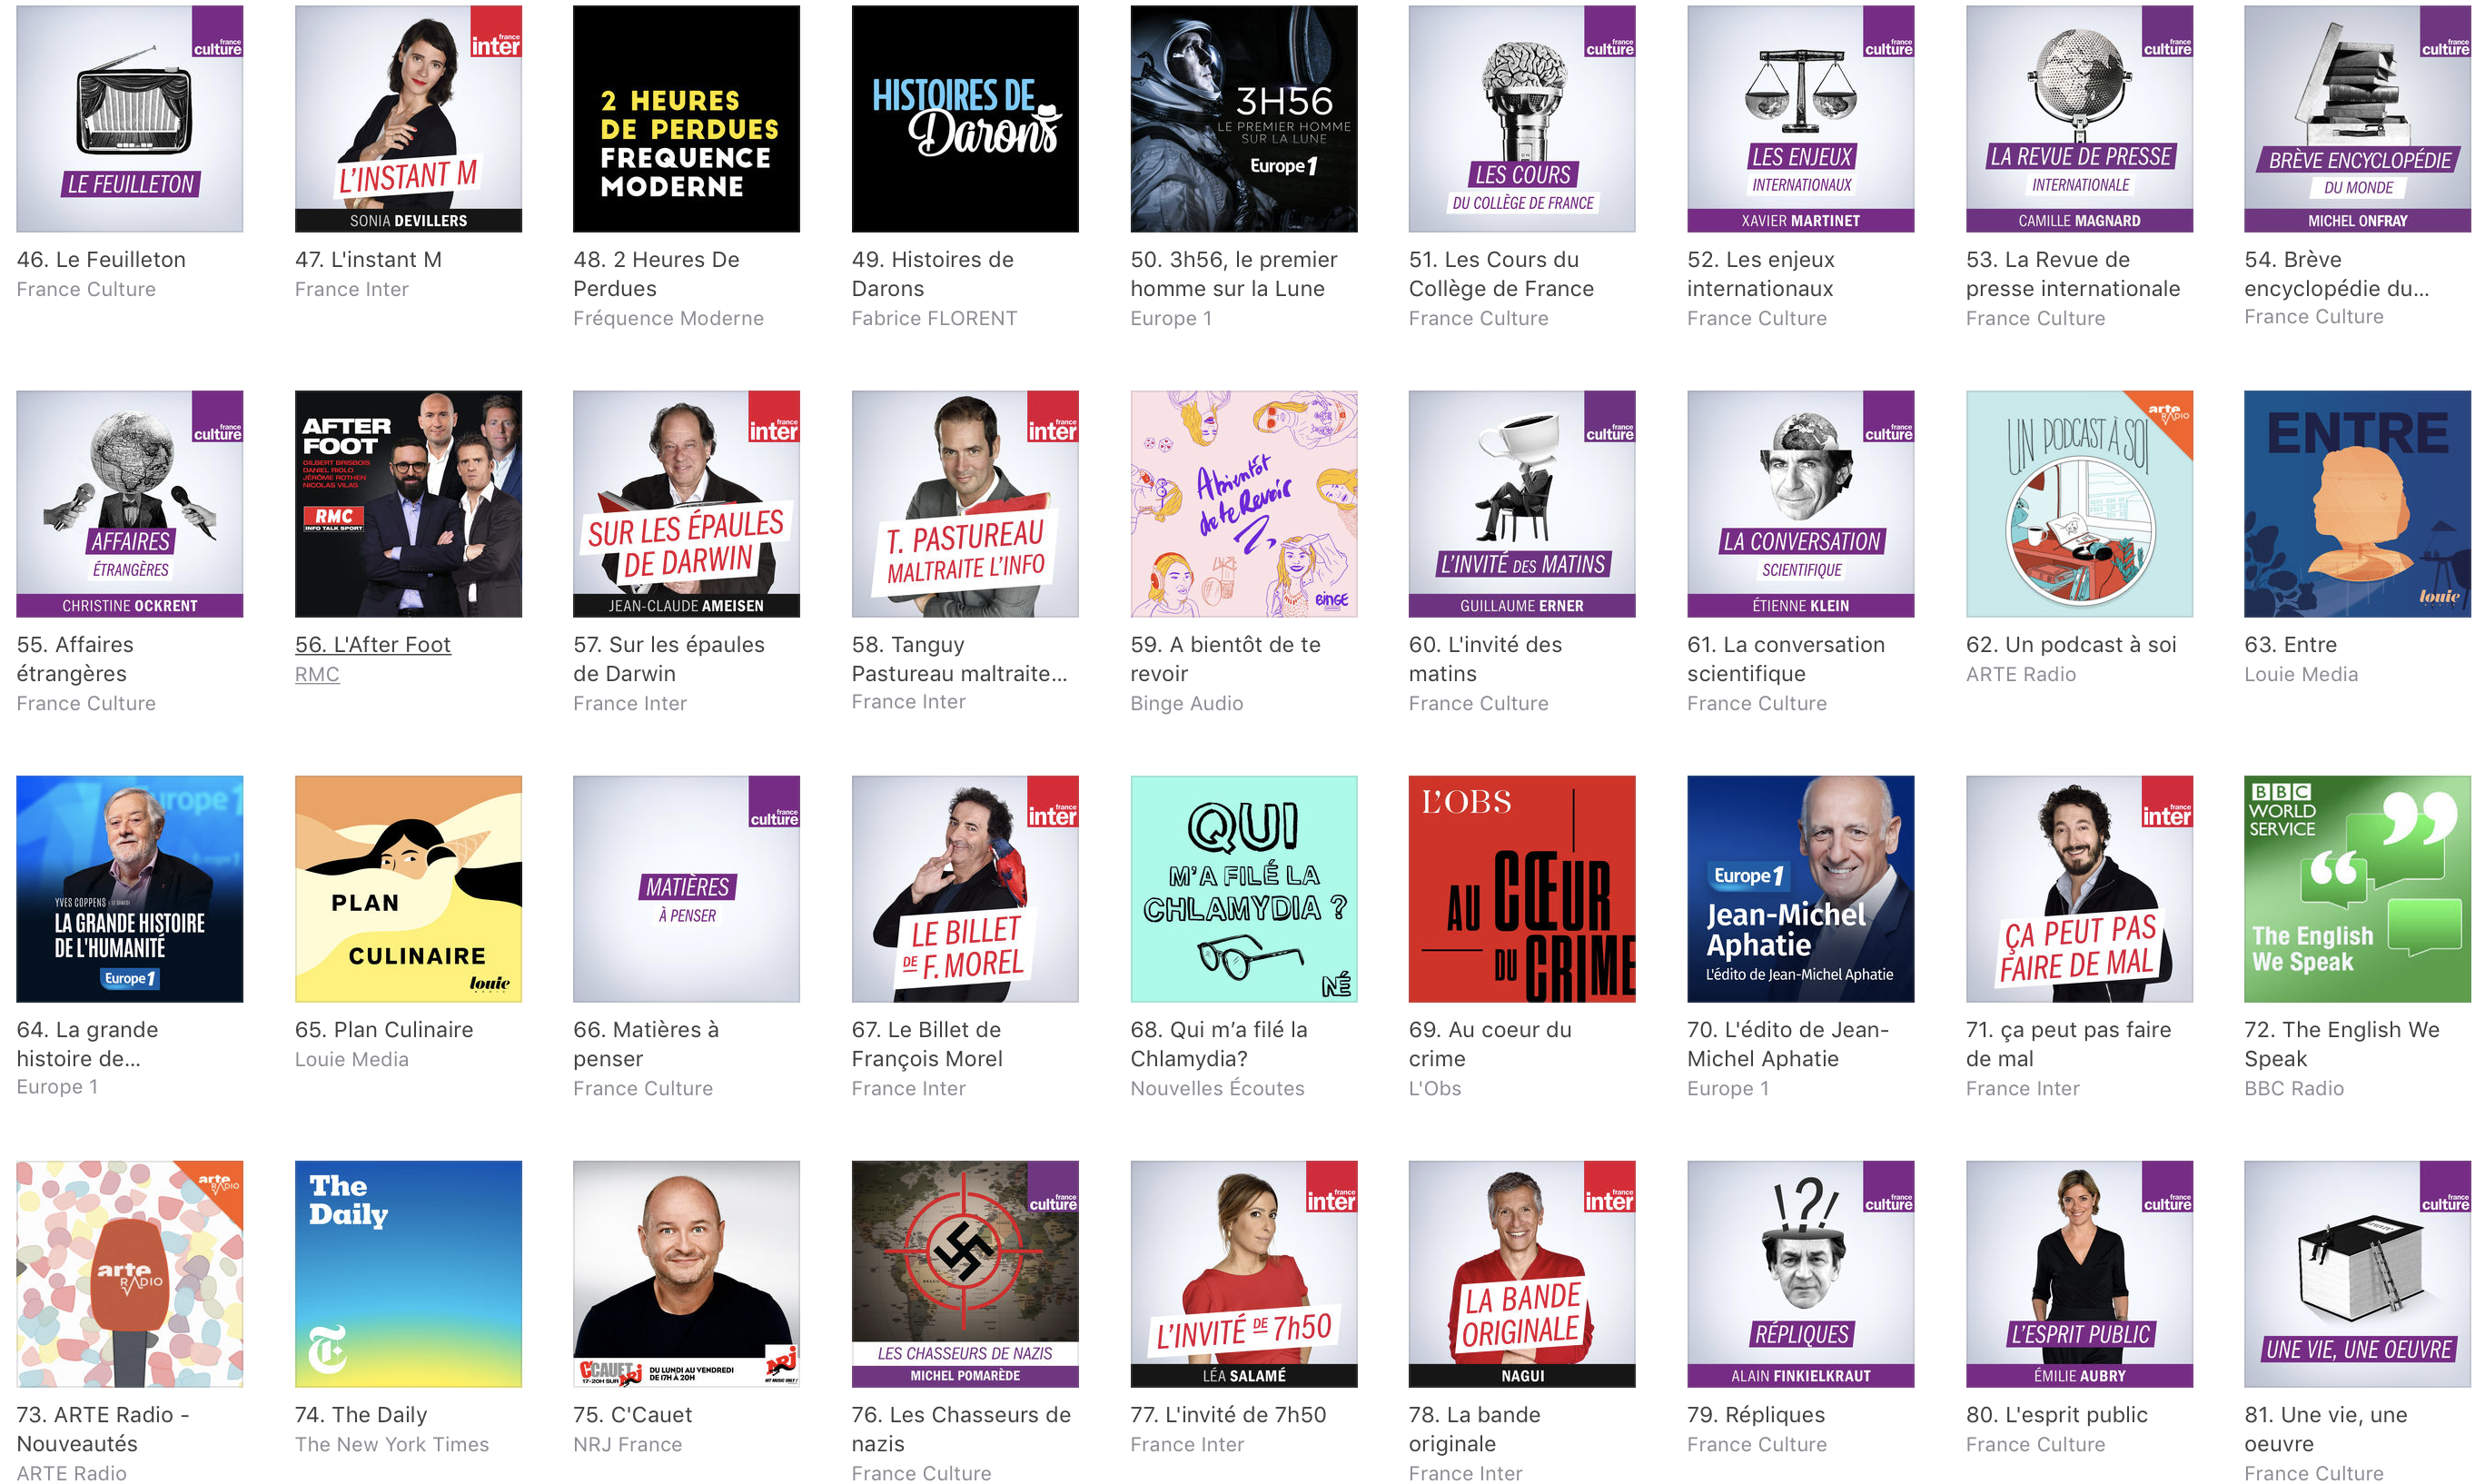 78 des podcasts telecharges sont ecoutes